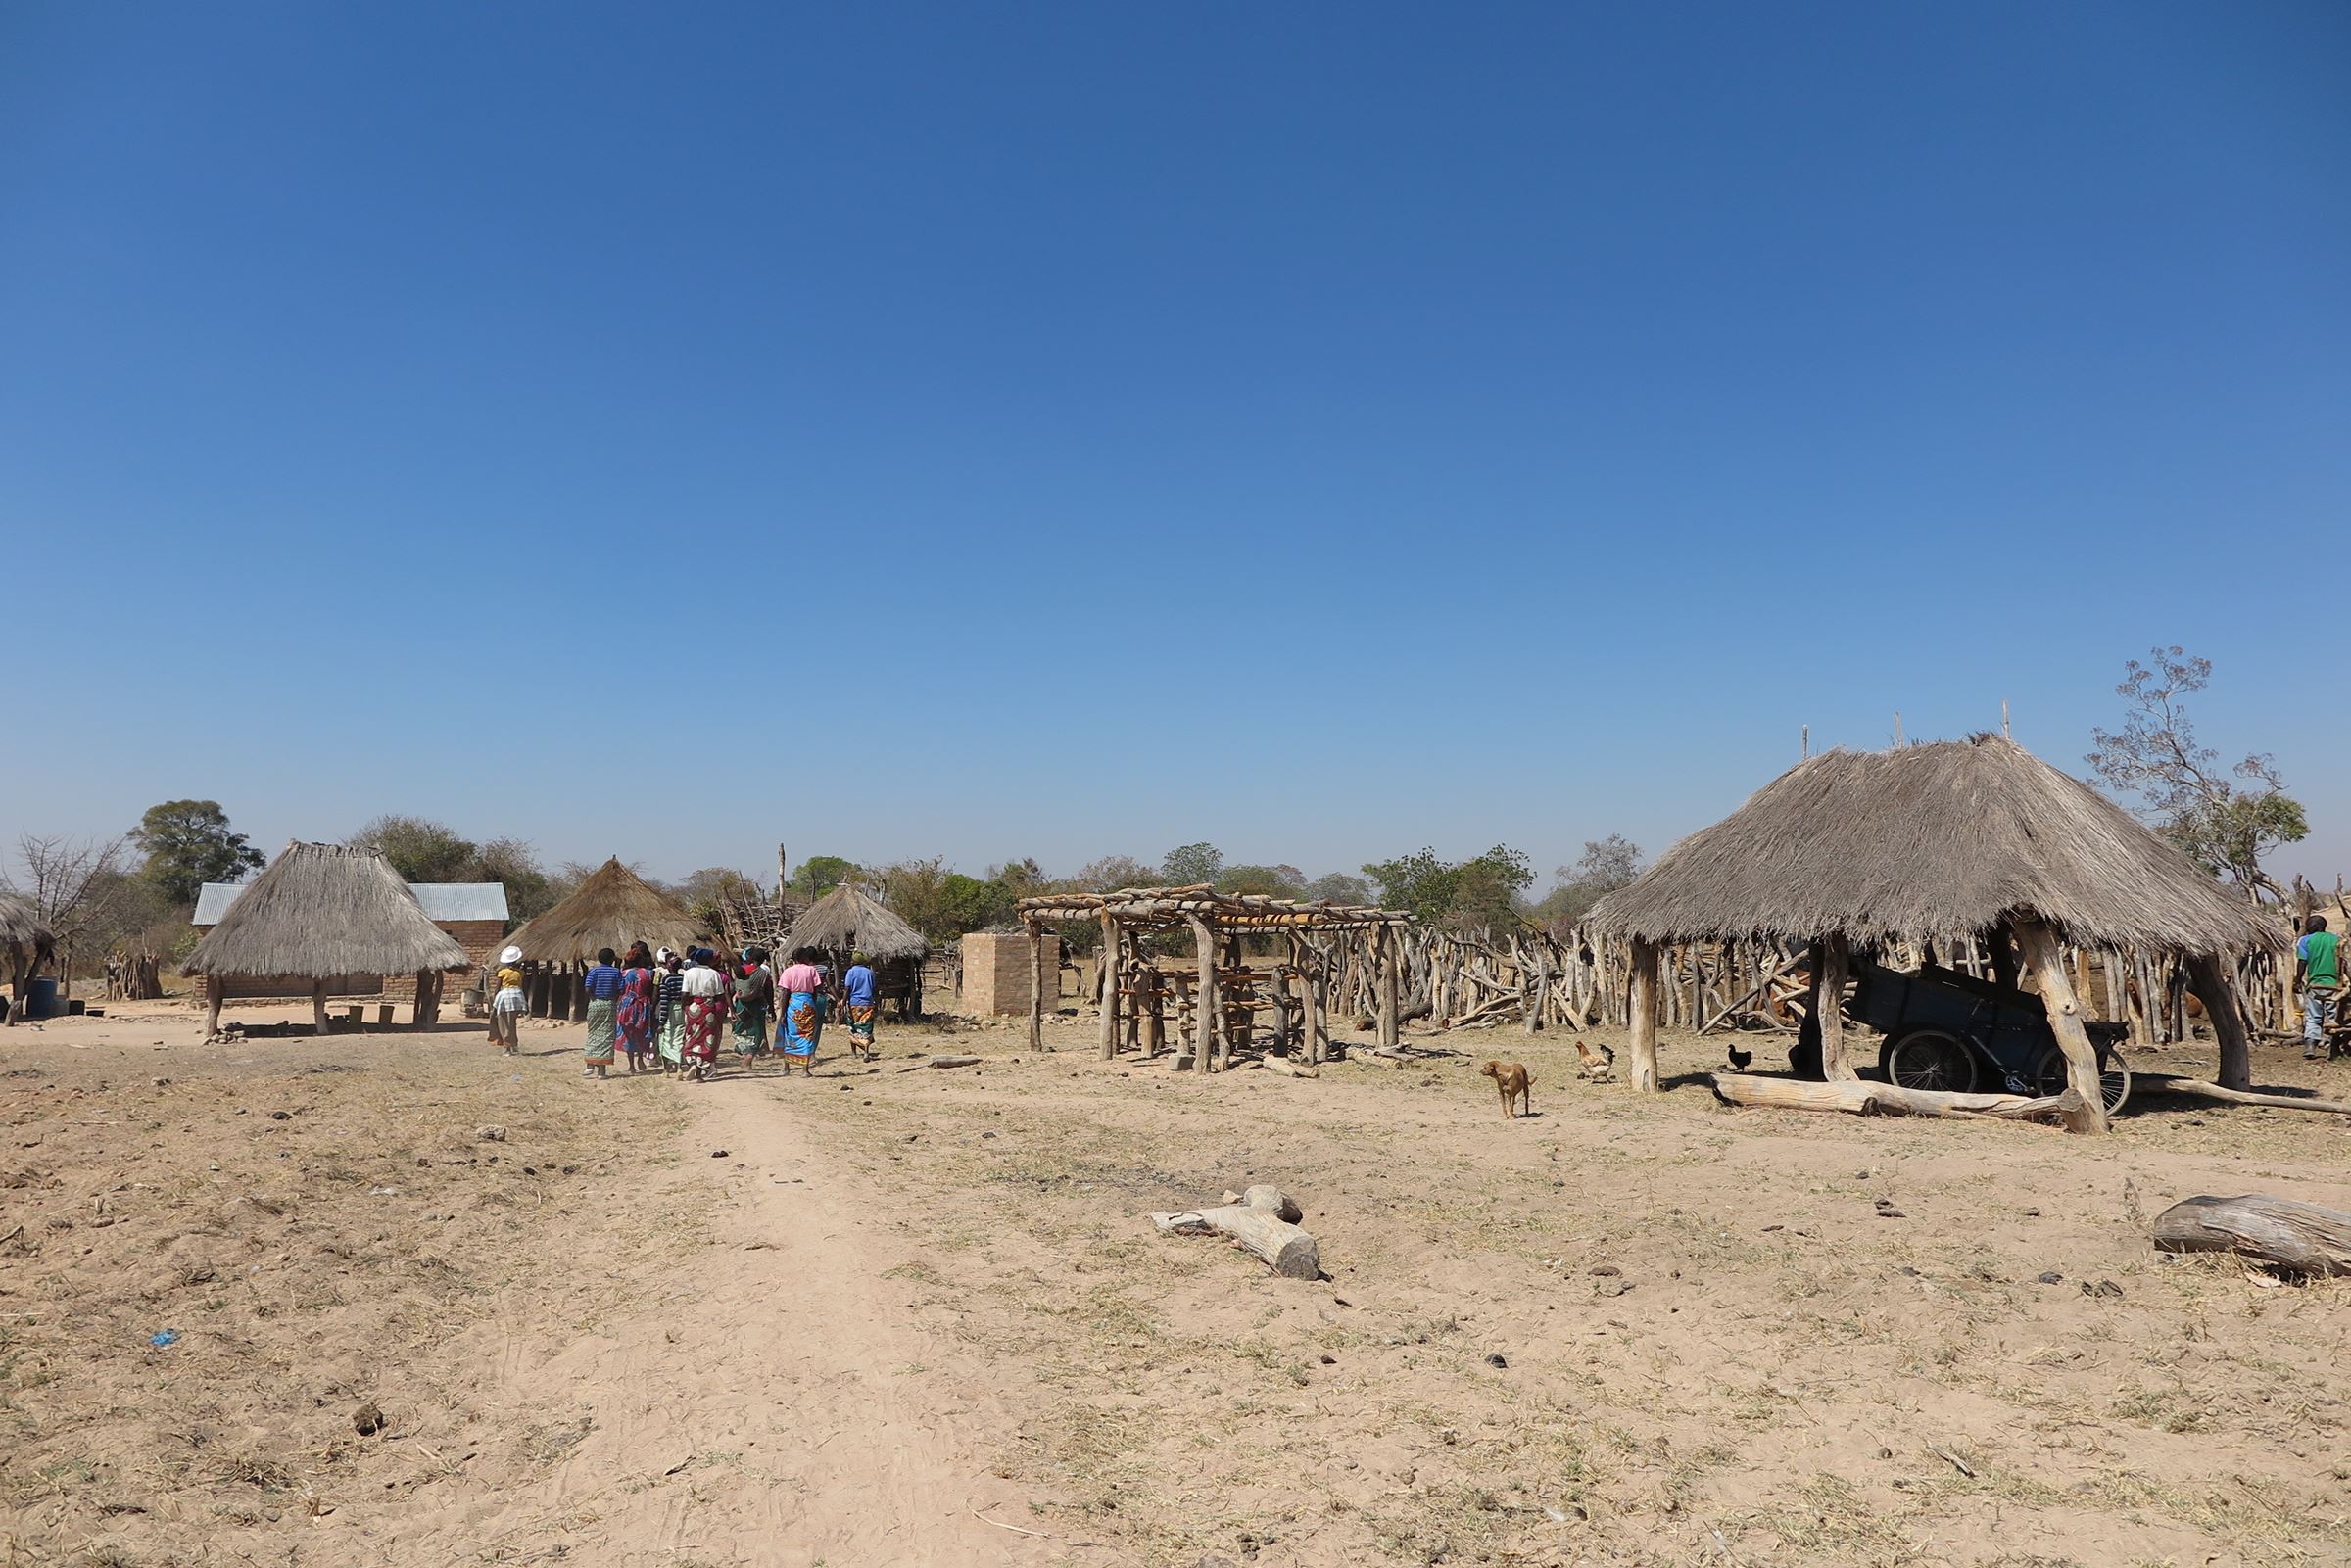 Eine staubtrockene Landschaft in Sambia. Im Hintergrund sieht man einfache Holzhütten eines Dorfes und eine Gruppe Menschen. (Quelle: Dorothea Schönfeld)